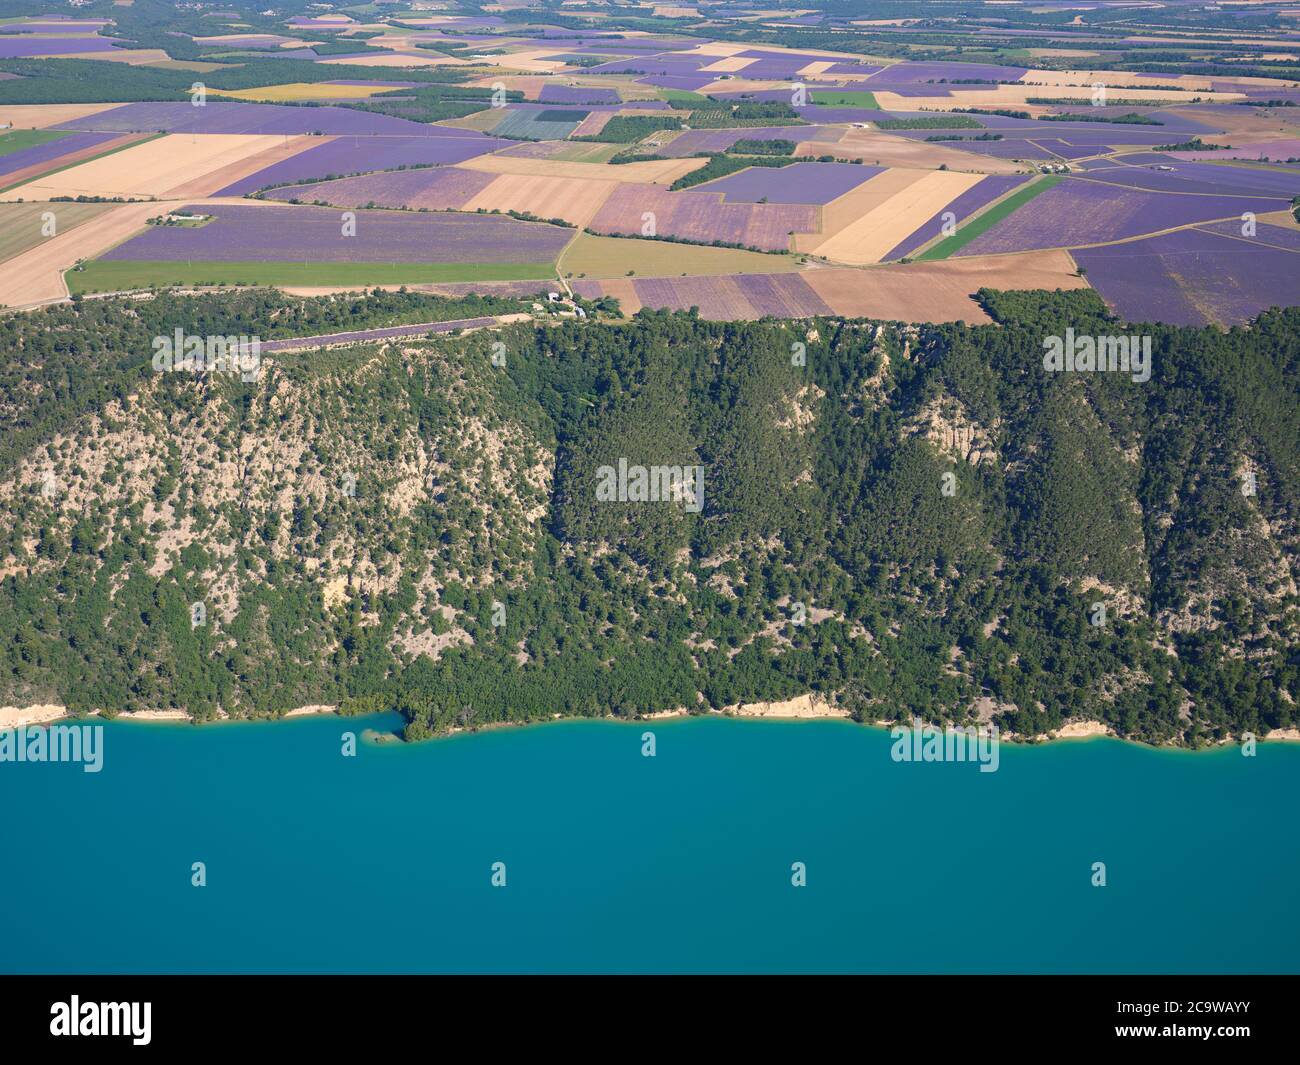 VUE AÉRIENNE.Champs de lavande sur le plateau de Valensole surplombant le lac Sainte-Croix.Moustiers-Sainte-Marie, Provence, France. Banque D'Images